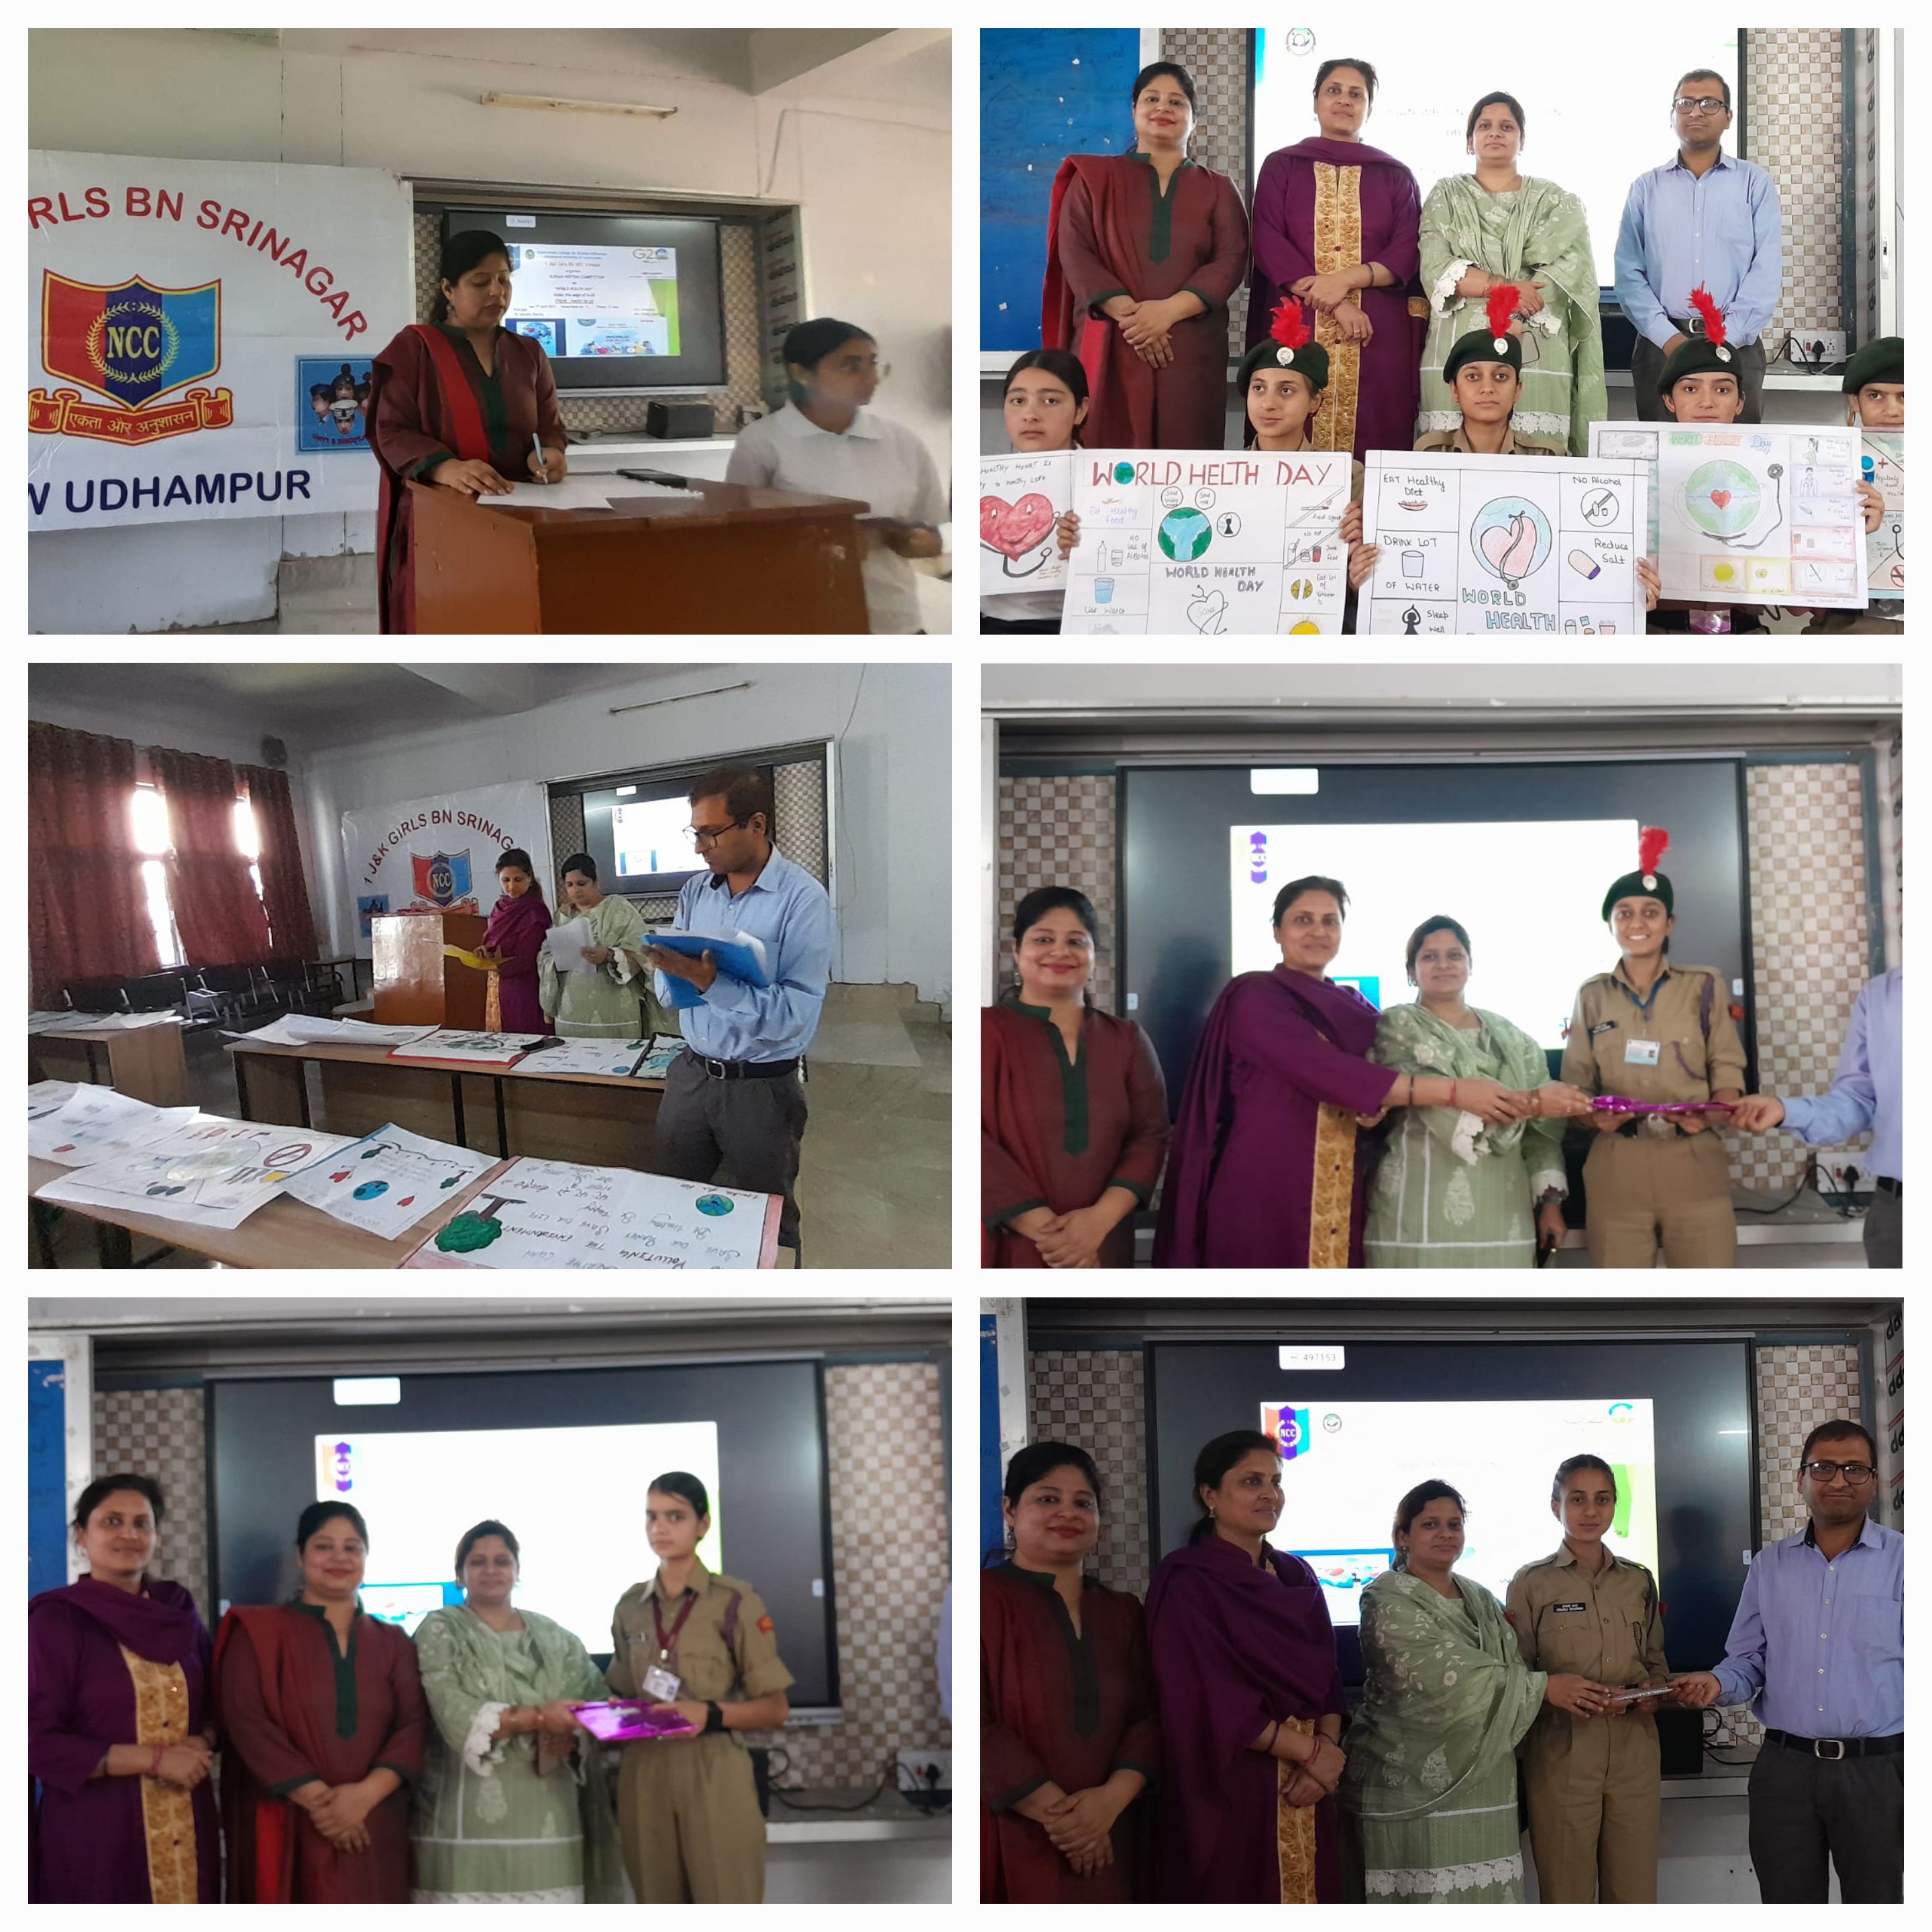 GCW Udhampur observes World Health Day